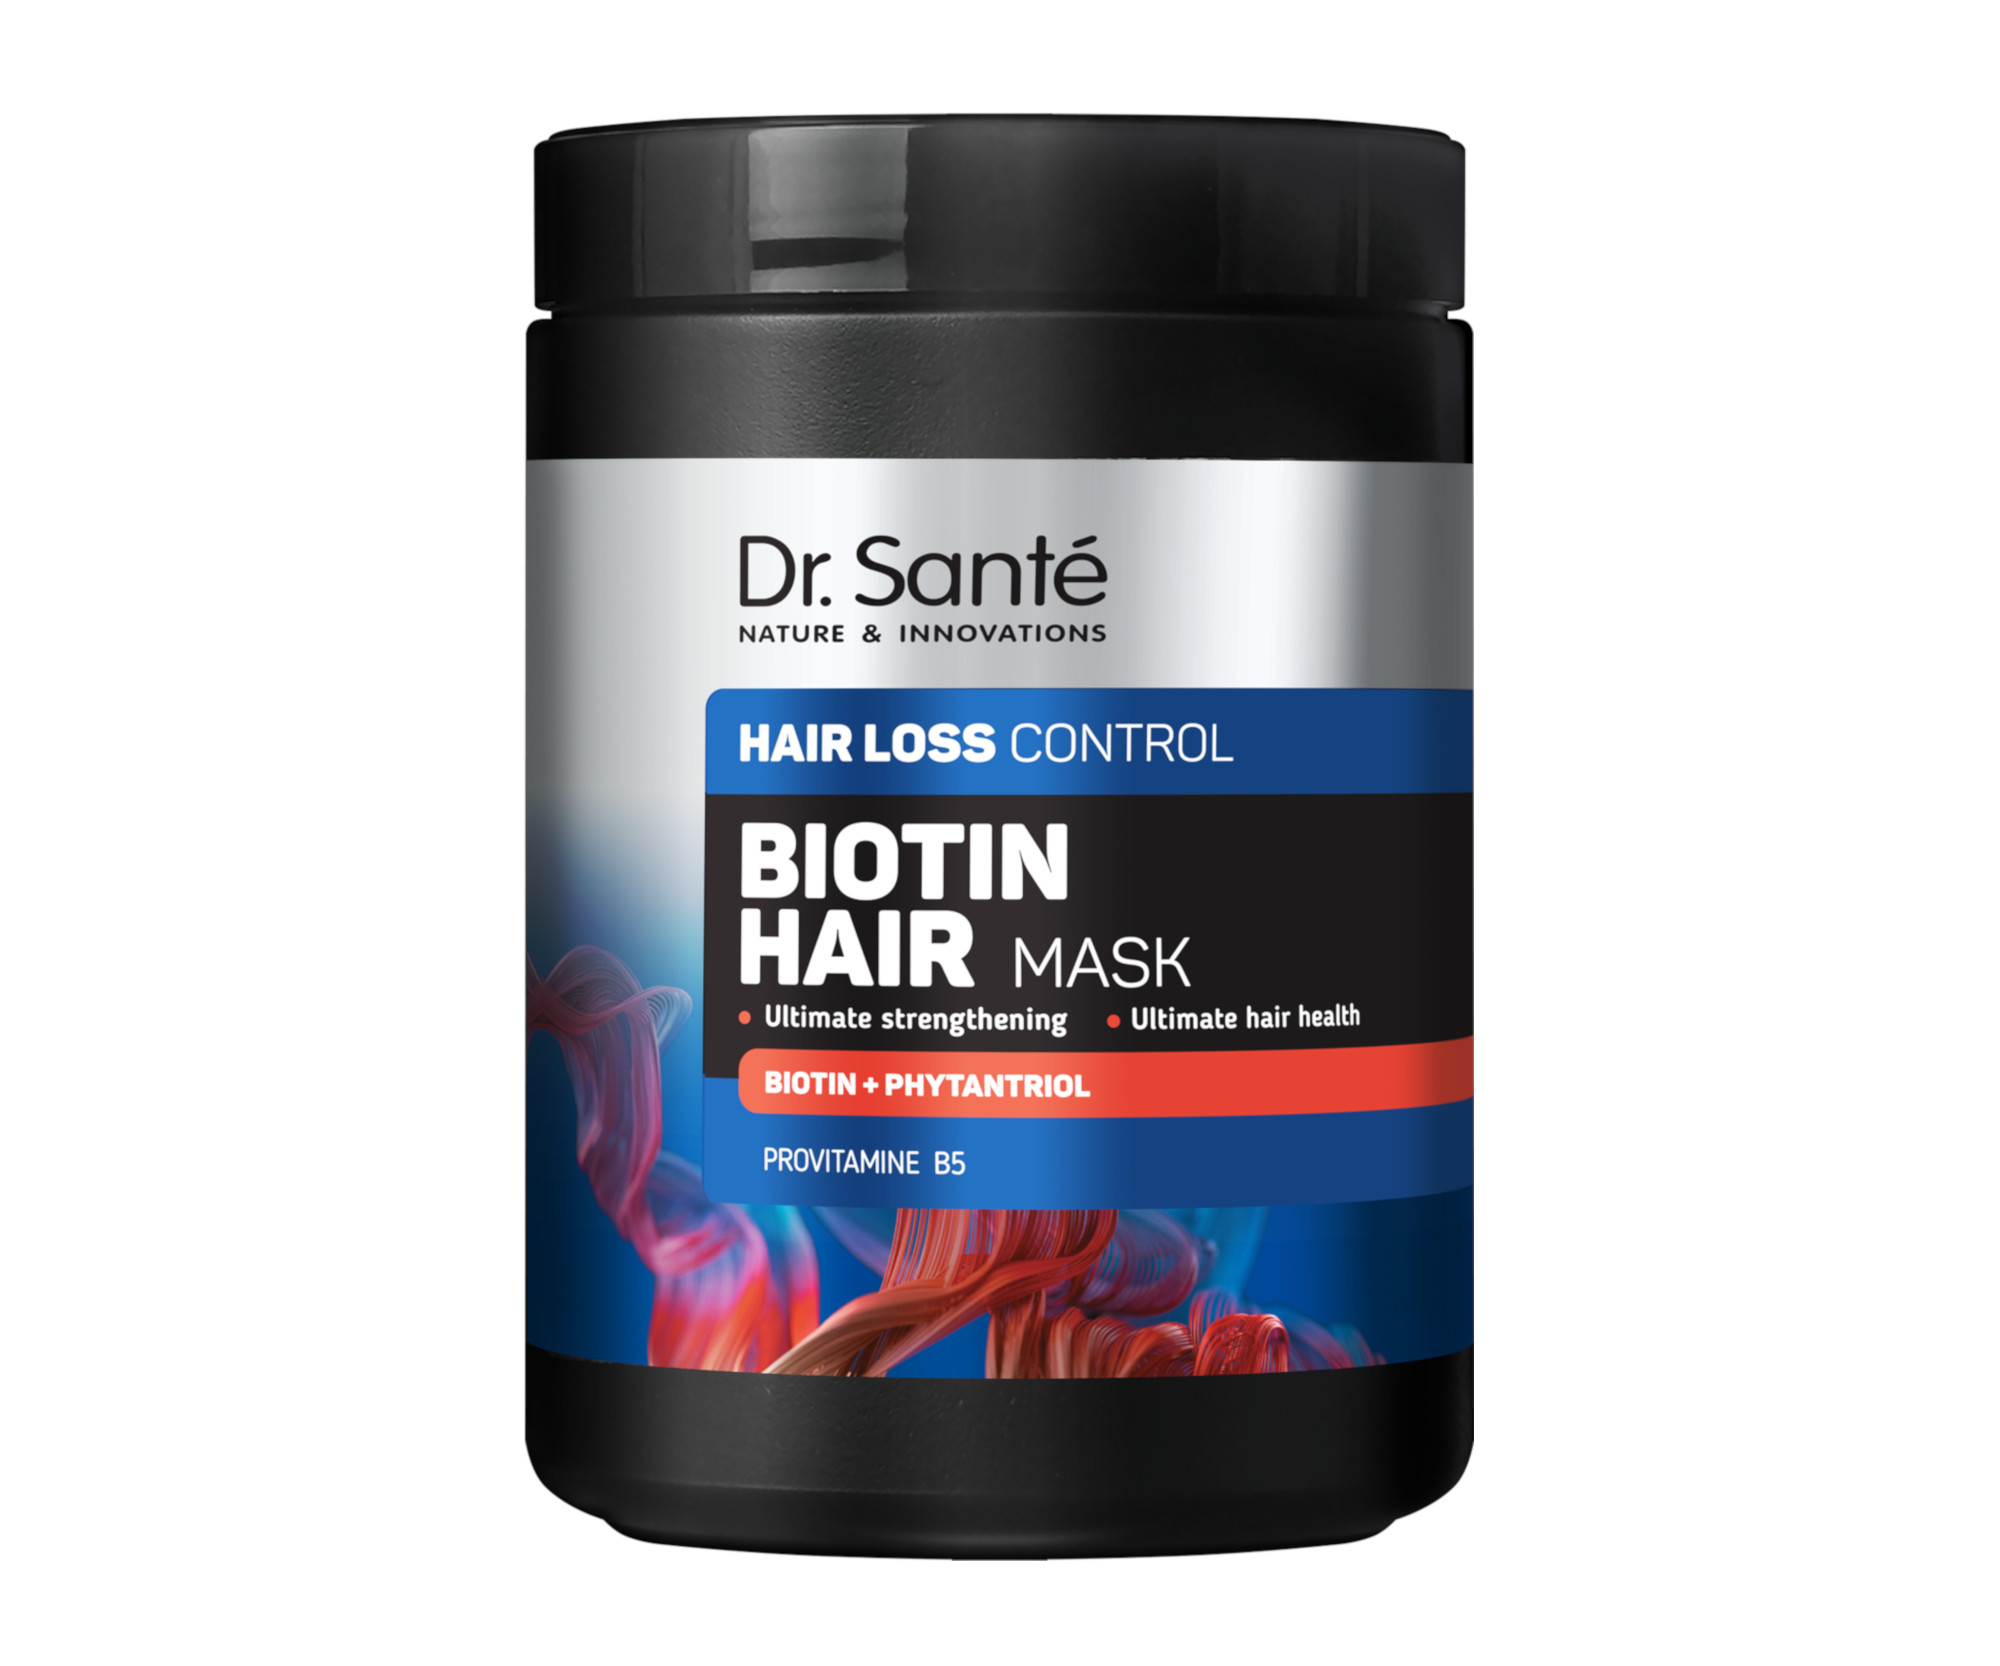 Maska proti vypadávání vlasů Dr. Santé Hair Loss Control Biotin Hair Mask - 1000 ml + dárek zdarma